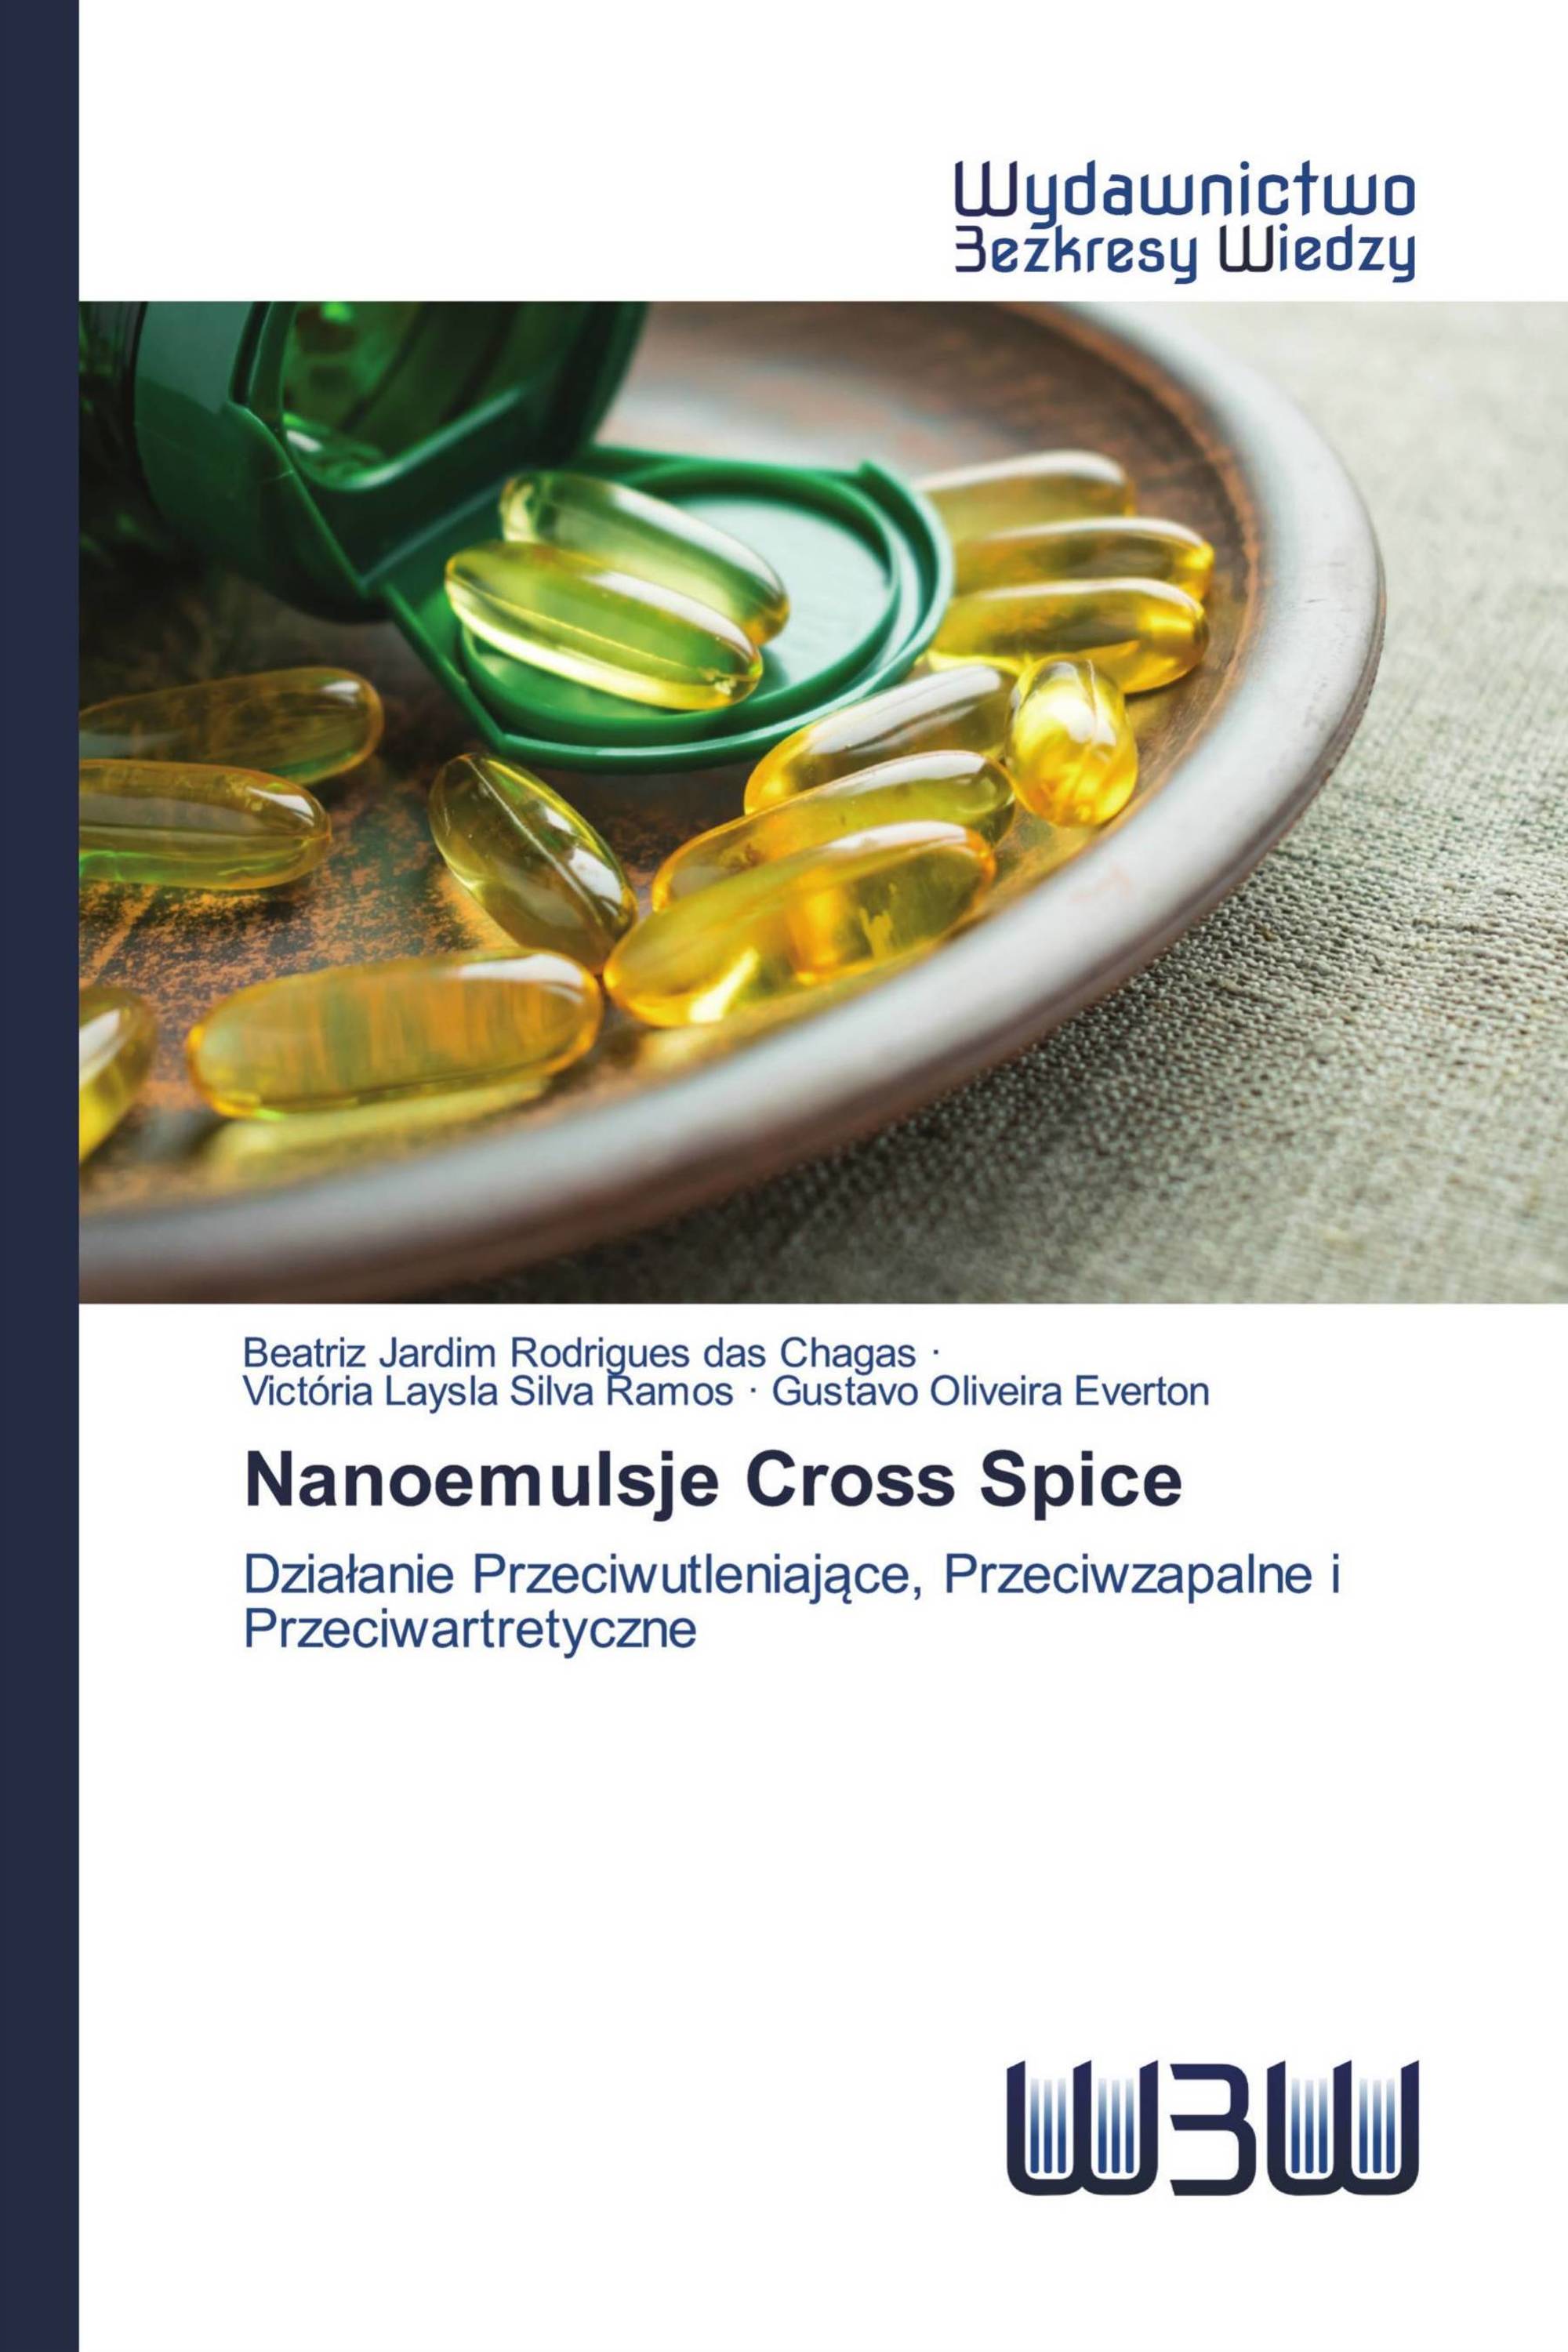 Nanoemulsje Cross Spice